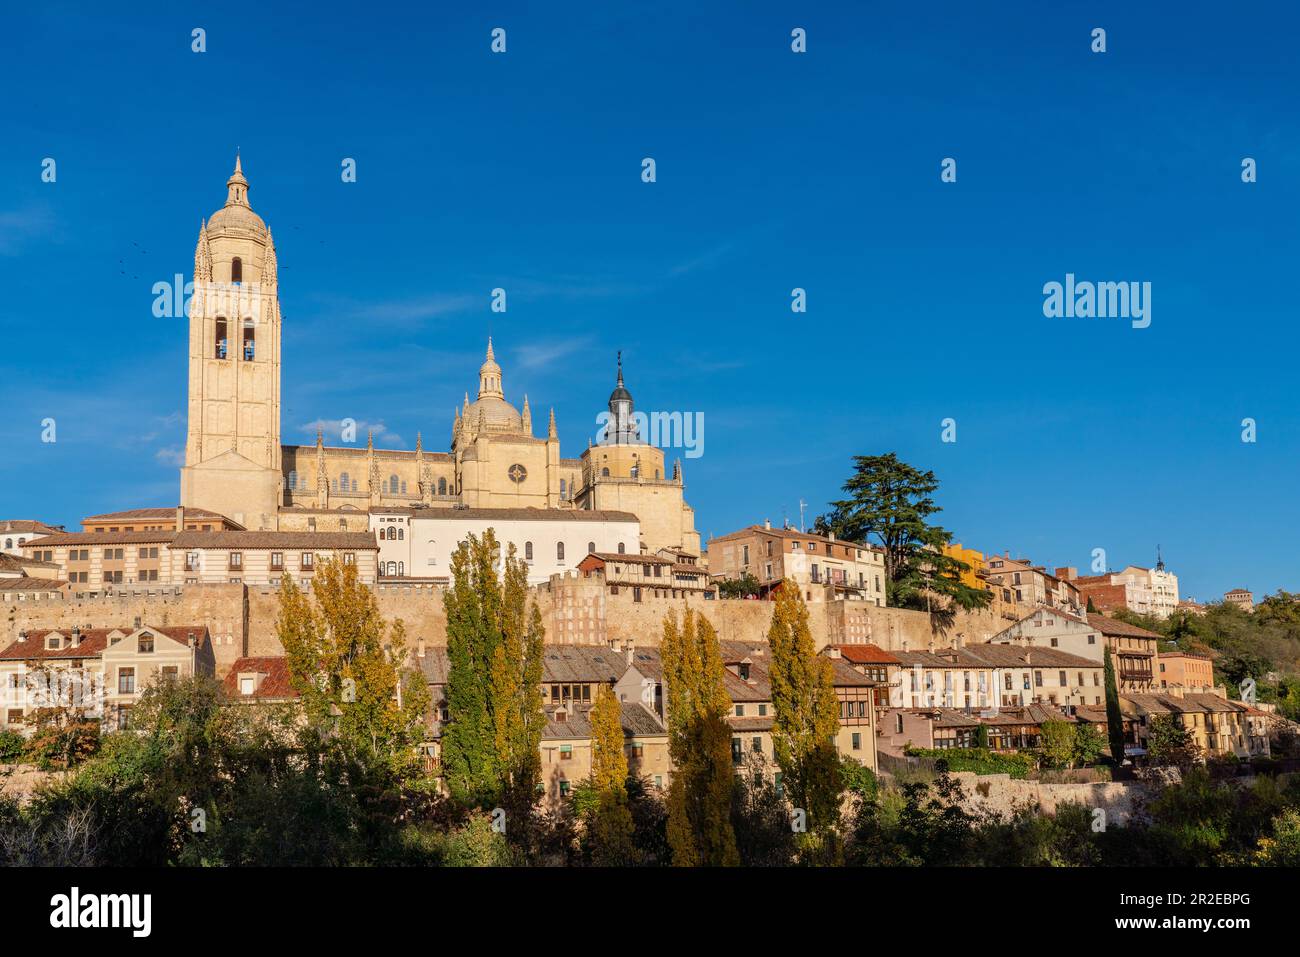 Kathedrale von Segovia - die römisch-katholische Kathedrale im gotischen Stil befindet sich auf dem Platz Plaza Mayor der Stadt Segovia Stockfoto